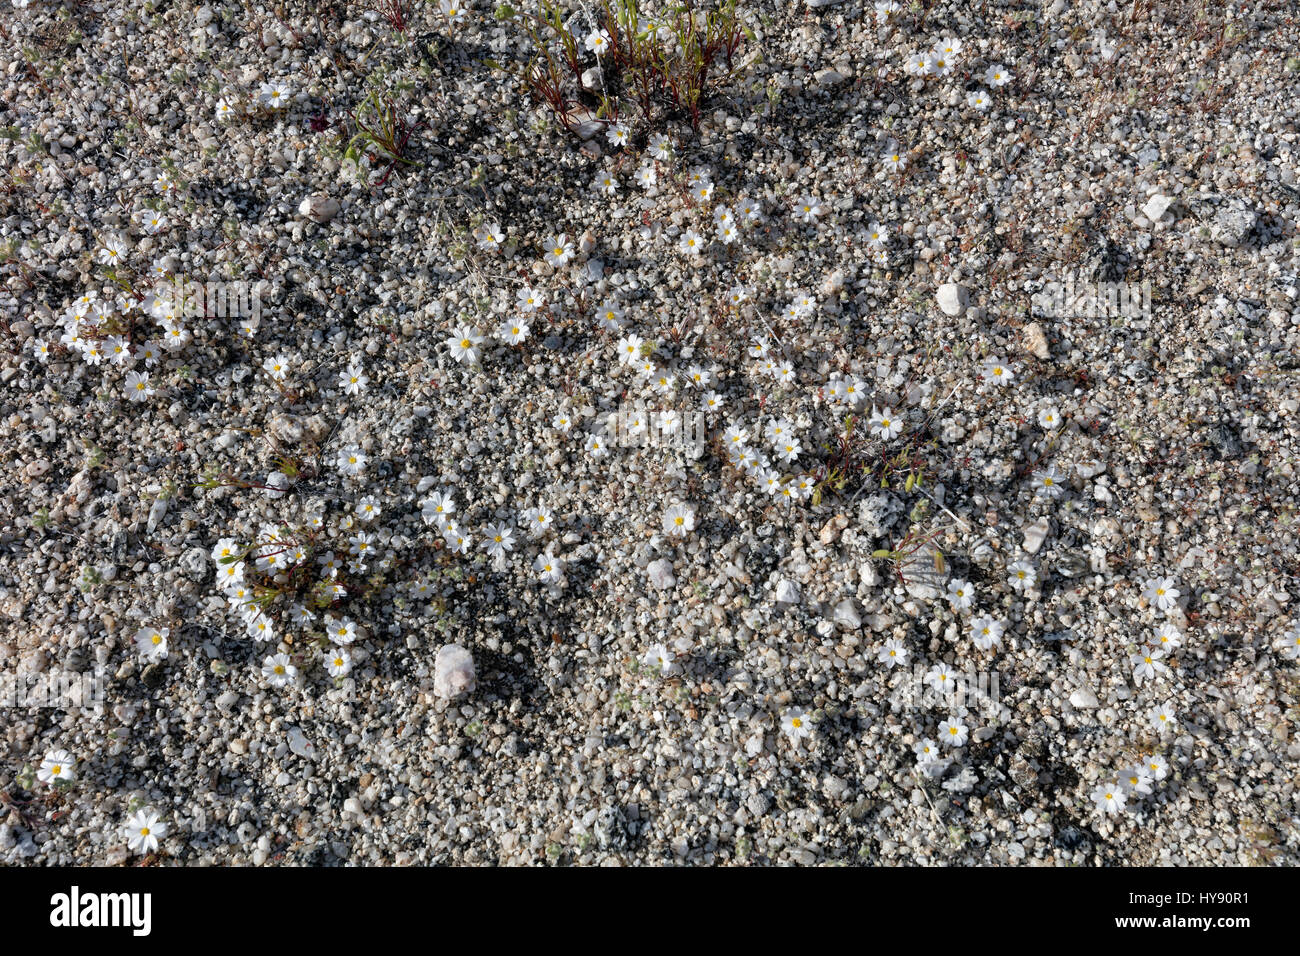 Monoptilon bellioides désert étoile, - Asteraceae, Anza Borrego SP - Californie Banque D'Images